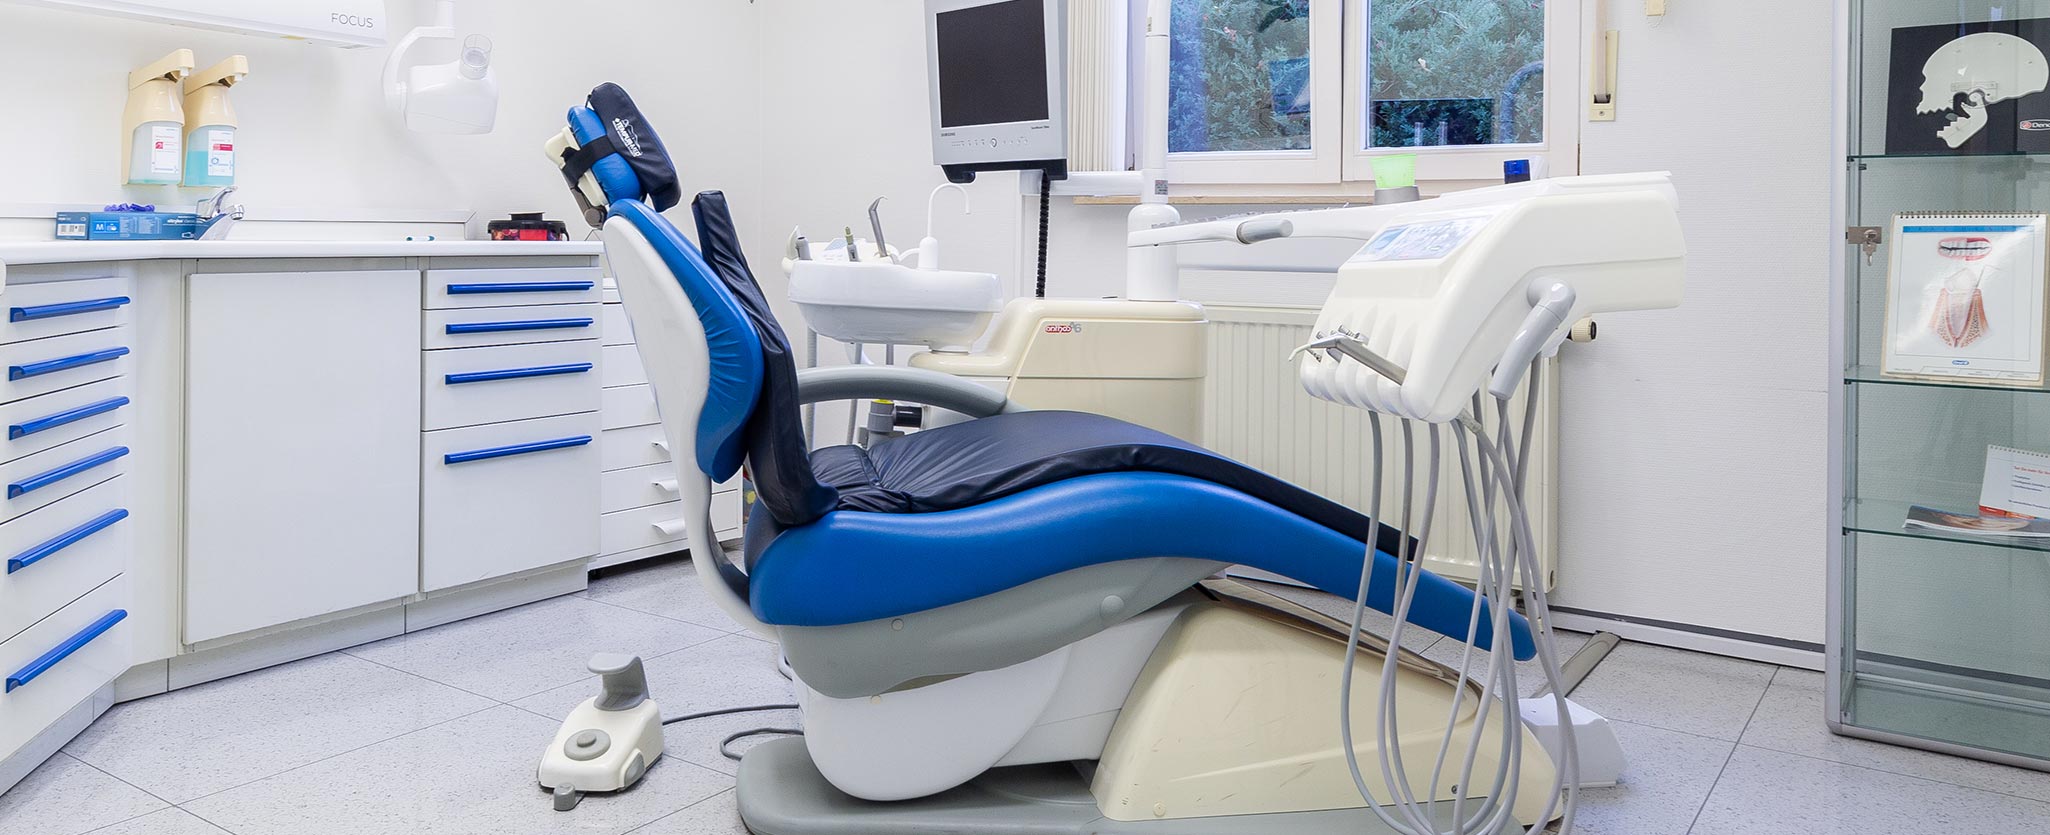 Foto vom Behandlungszimmer der Zahnarztpraxis Totolici in Konstanz mit blau gepolsterten Behandlungsstuhl und diversen Zahnärztlichen Geräten